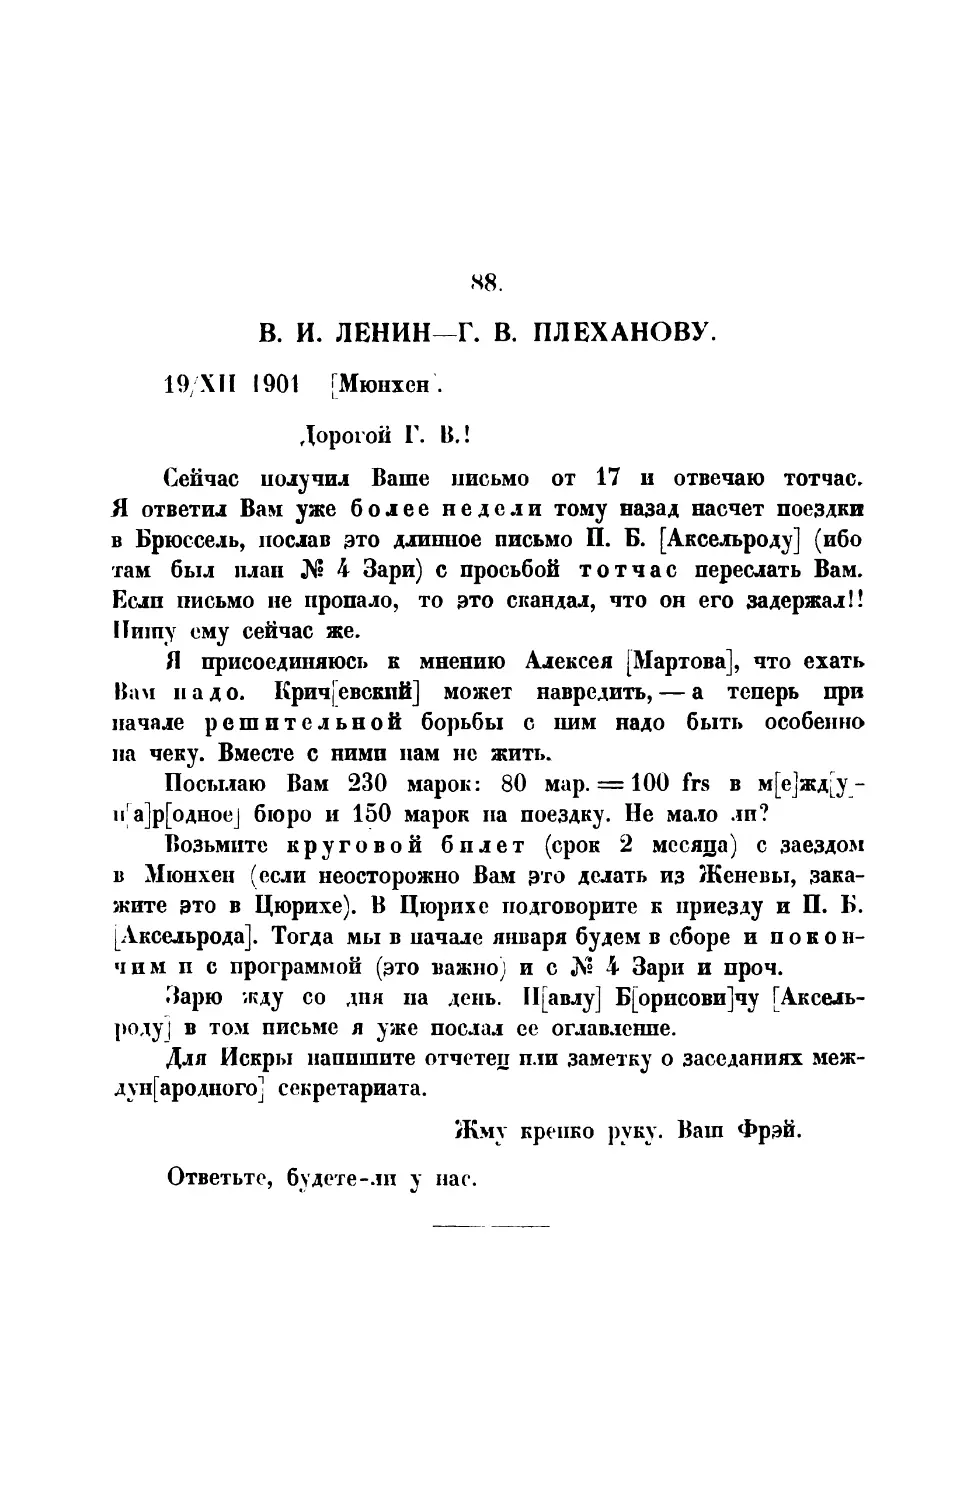 88. В. И. Ленин. — Письмо Г. В. Плеханову от 19 XII 1901 г.